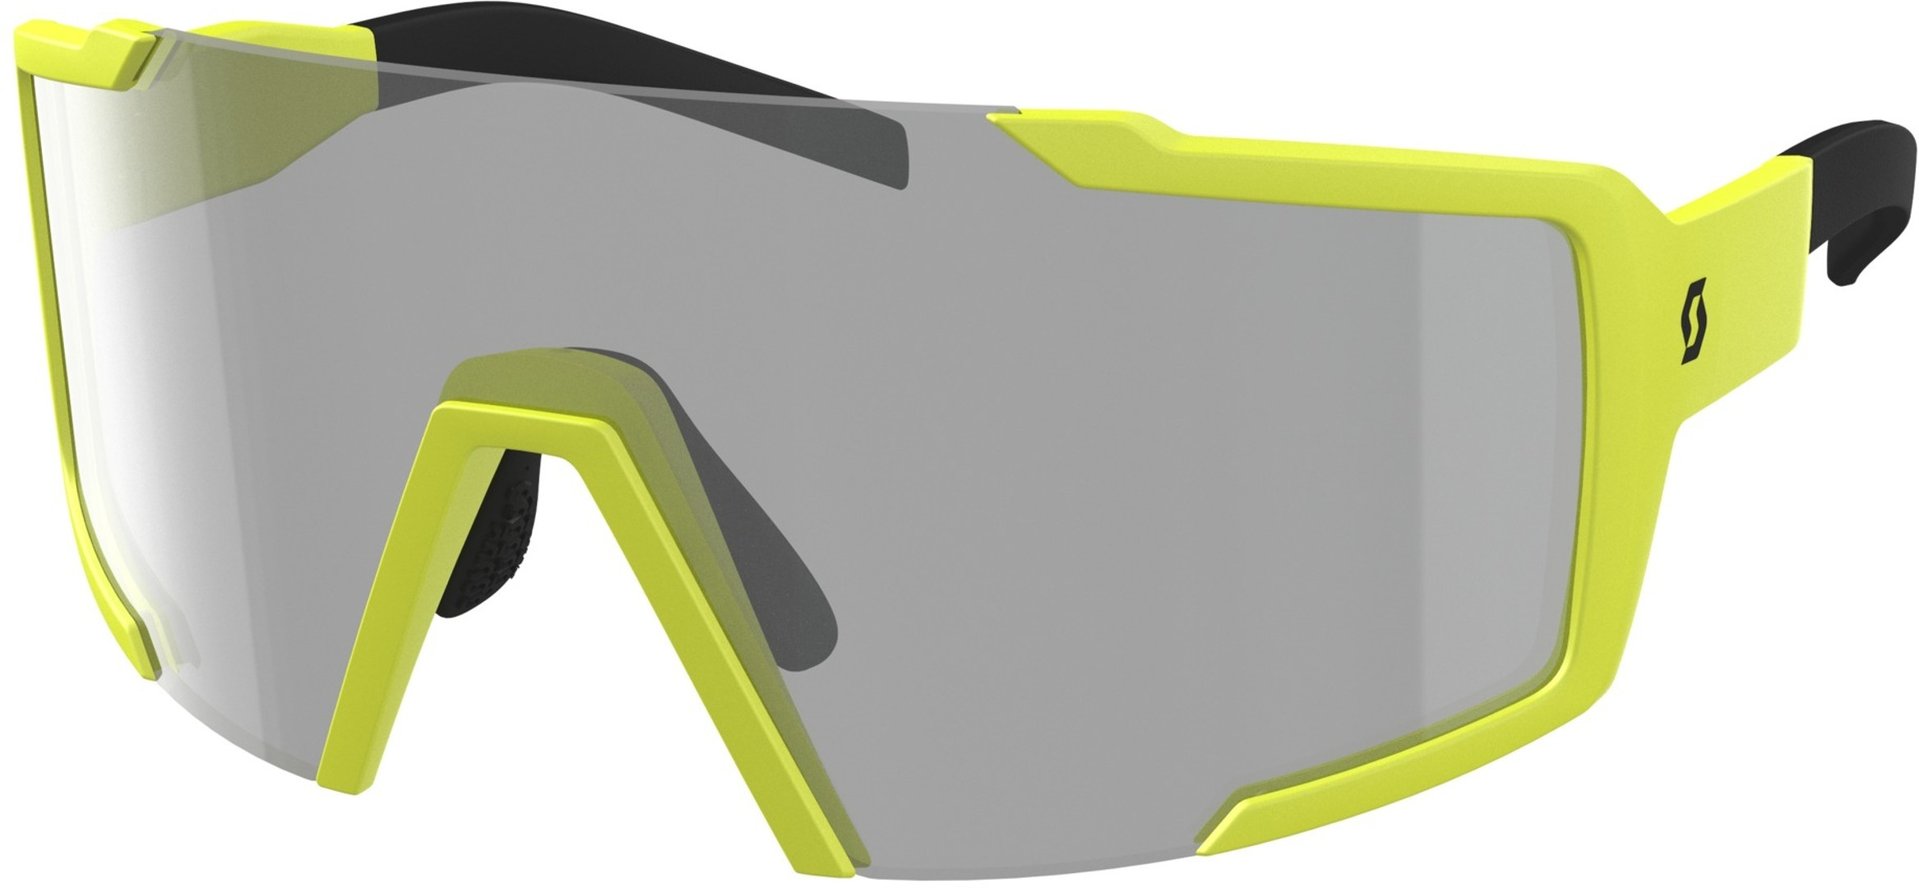 Солнцезащитные очки Scott Shield LS с регулируемой носовой накладкой, желтый/серый